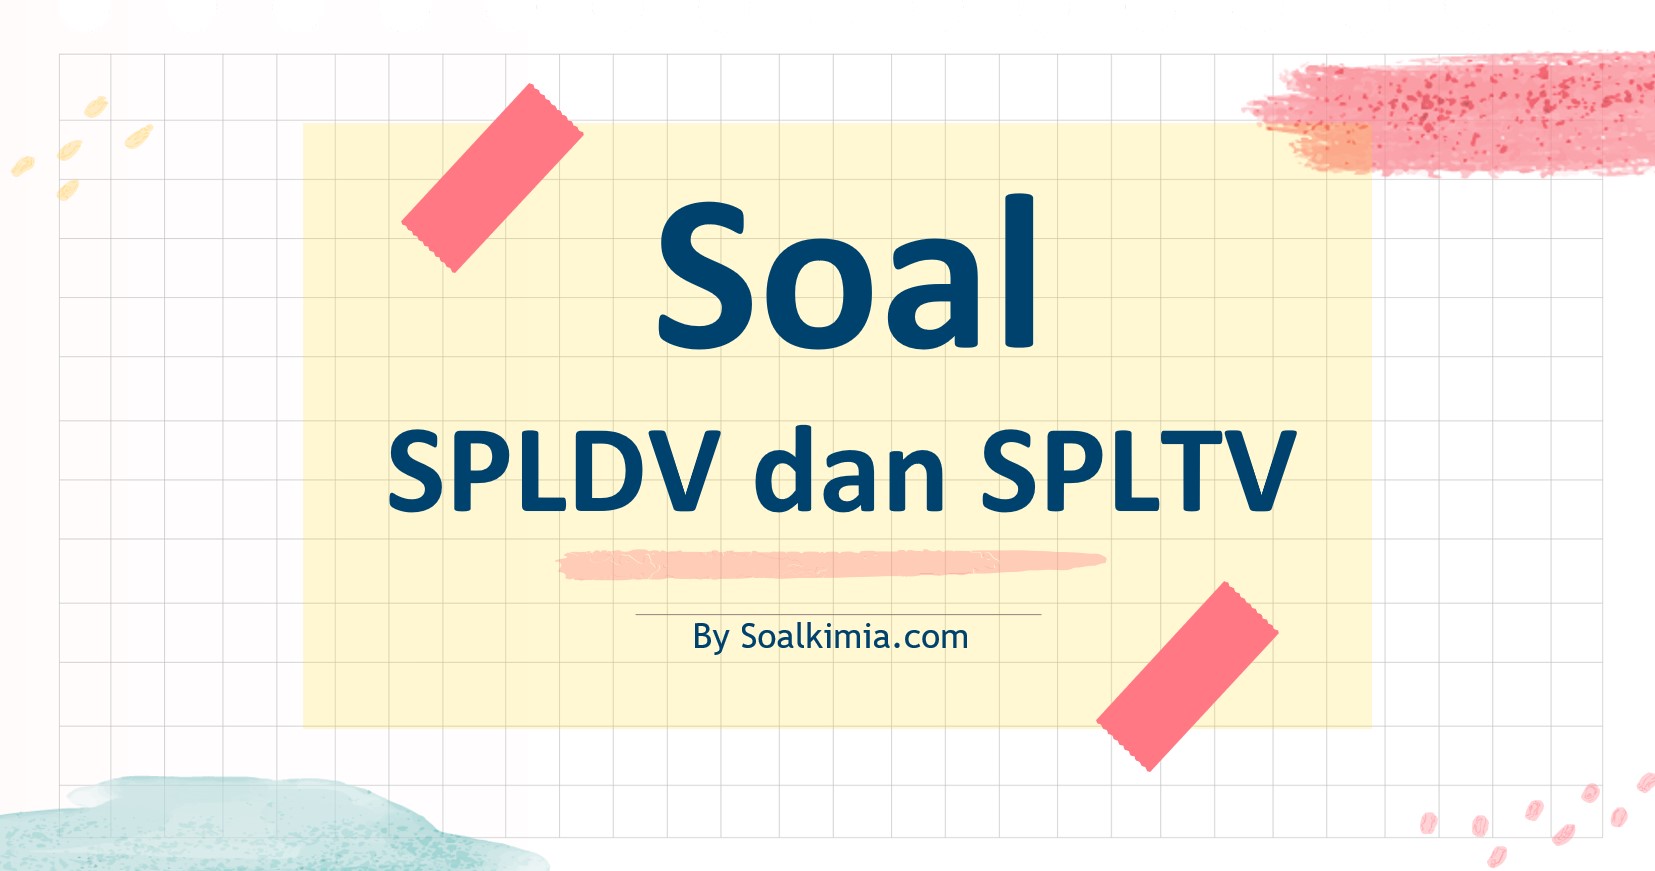 Soal SPLDV dan SPLTV